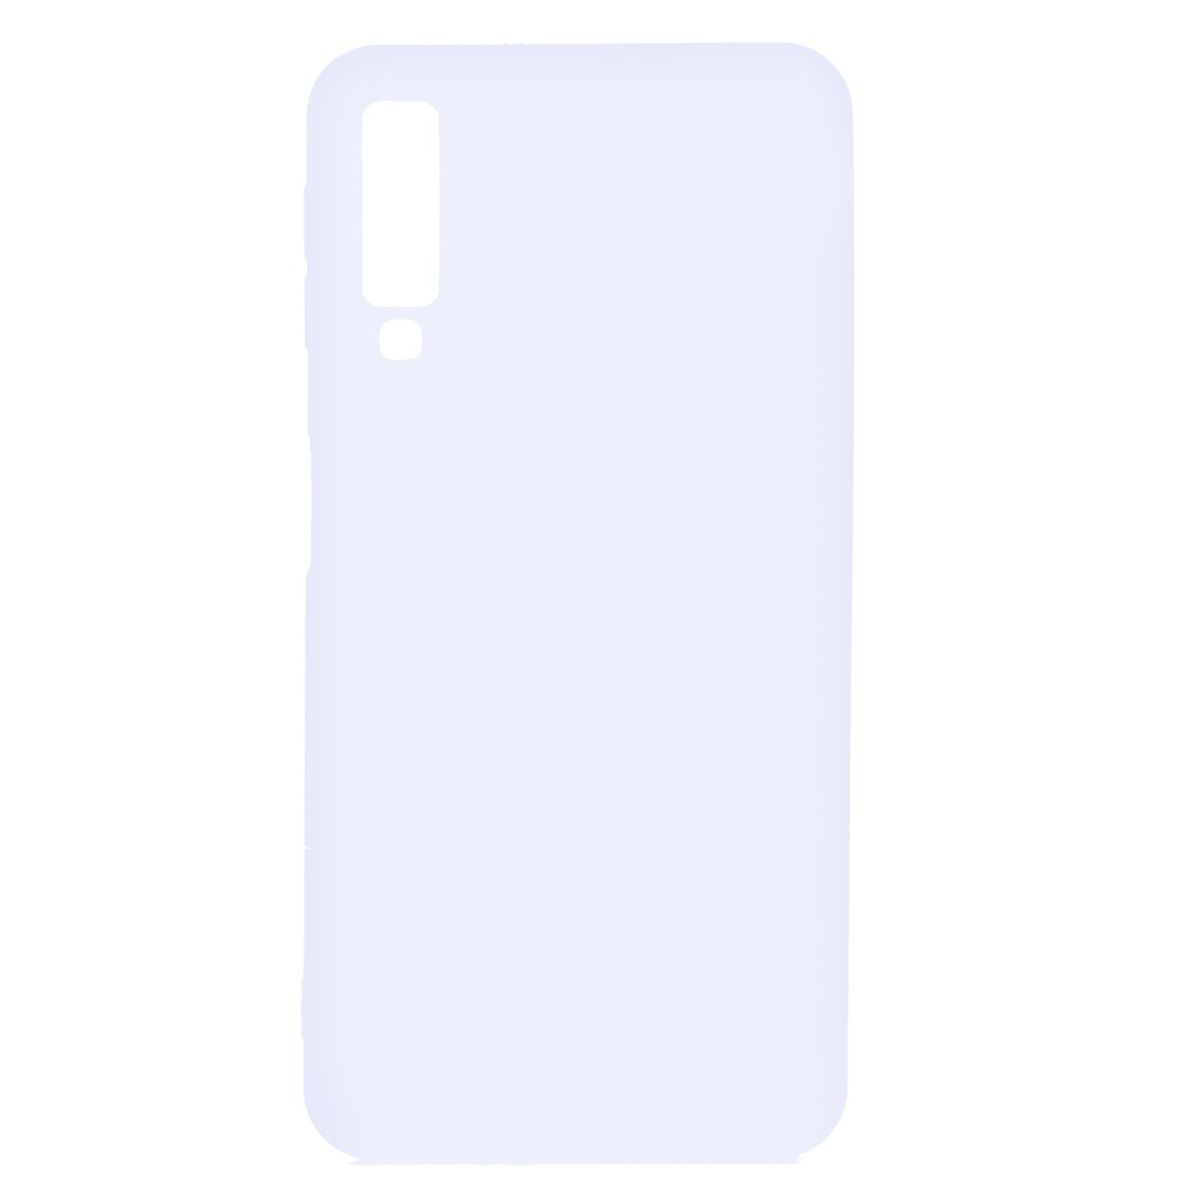 COVERKINGZ Handycase aus Silikon, Backcover, Samsung, Galaxy A7 Weiß 2018